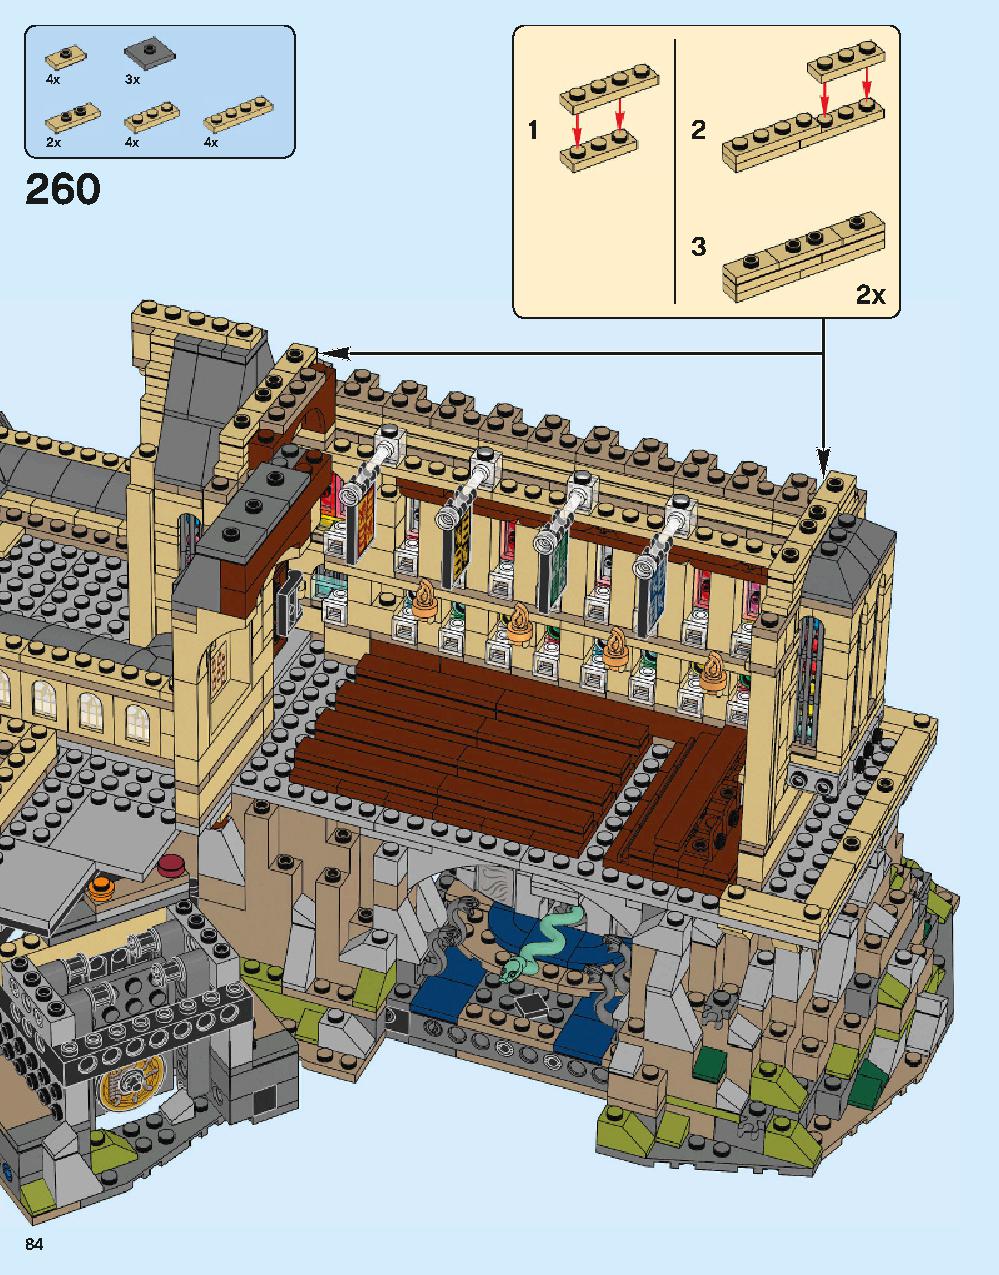 ホグワーツ城 71043 レゴの商品情報 レゴの説明書・組立方法 84 page